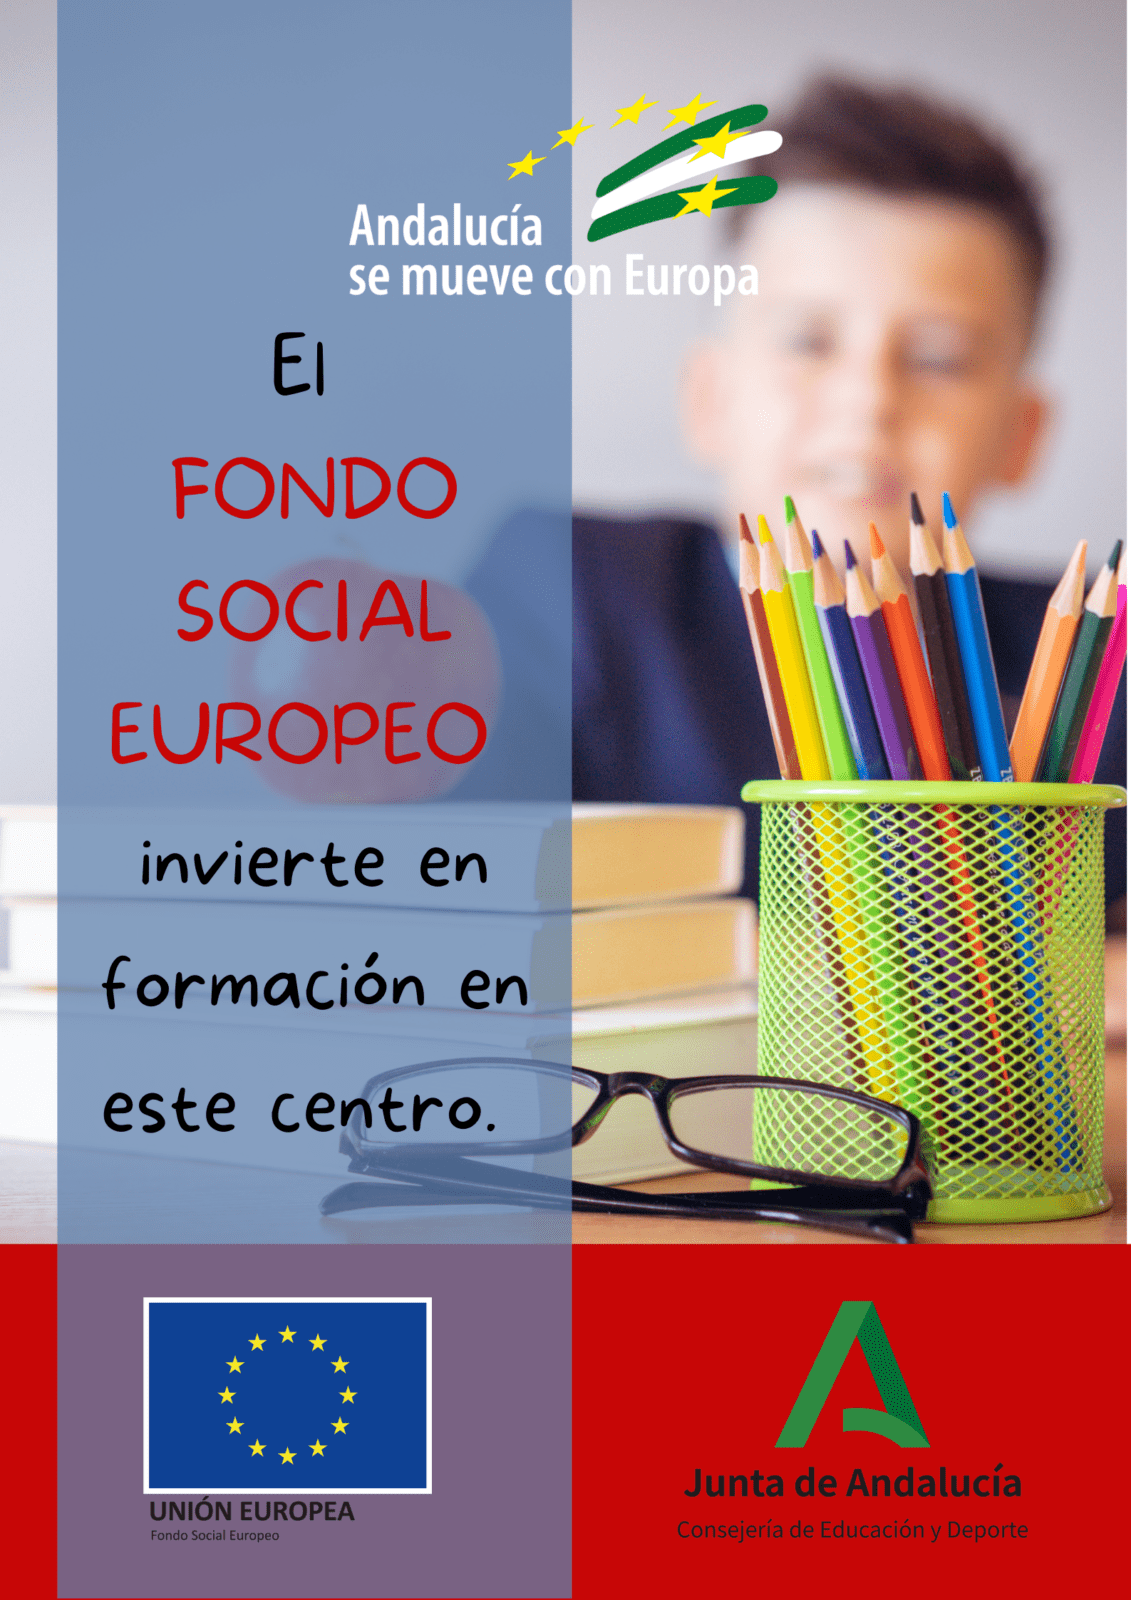 El Fondo Social Europeo invierte en formación en este centro